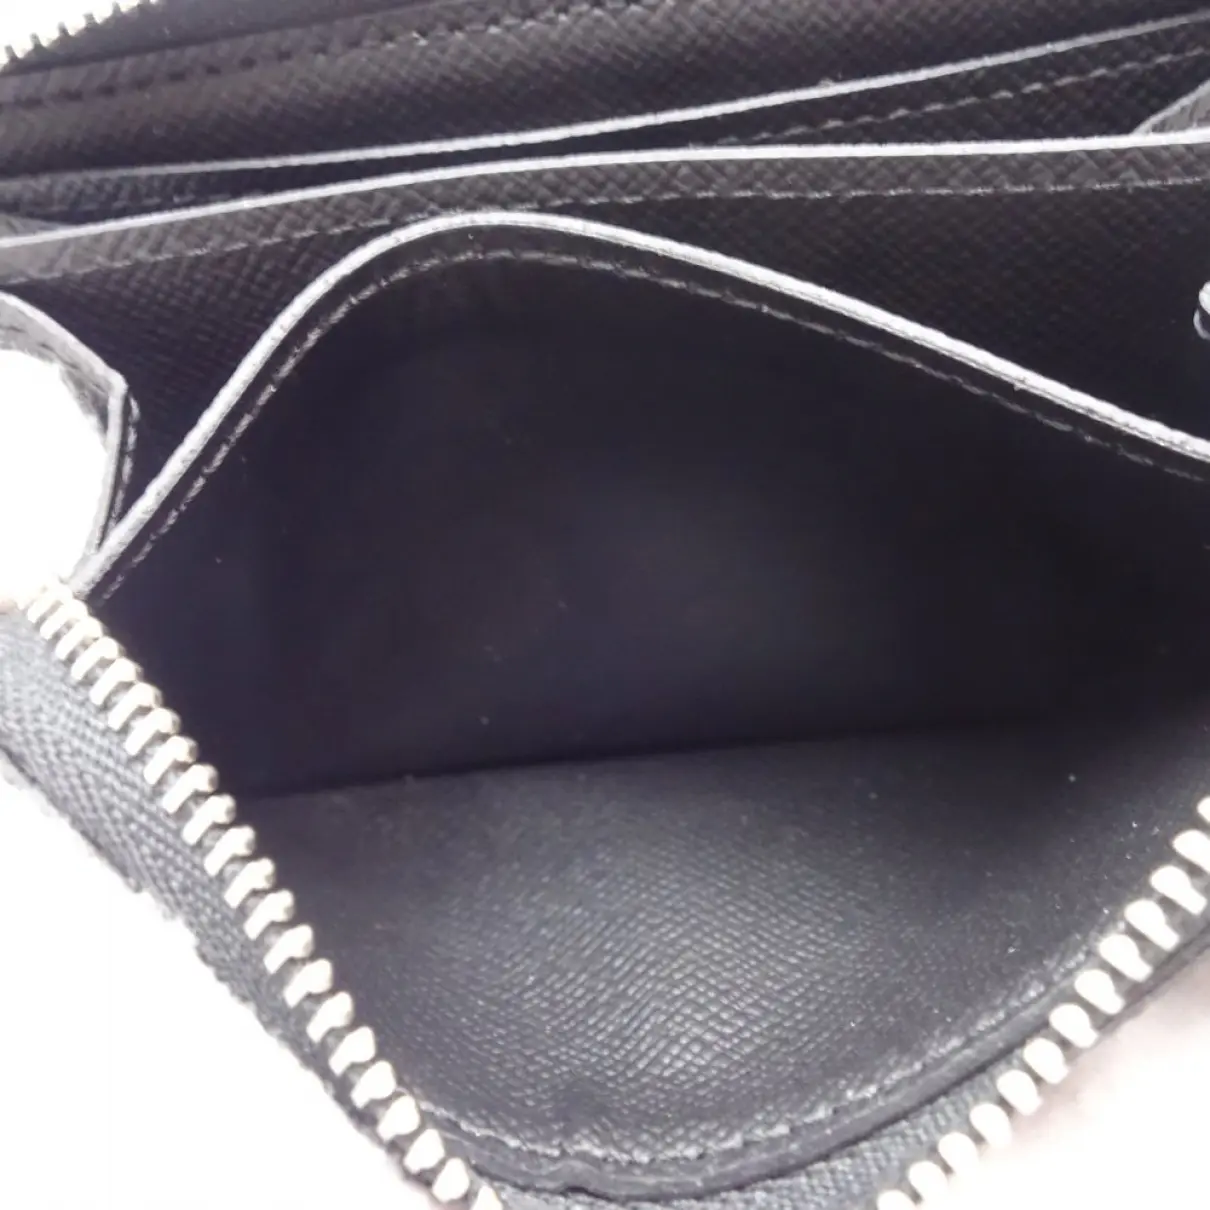 Cloth small bag Louis Vuitton